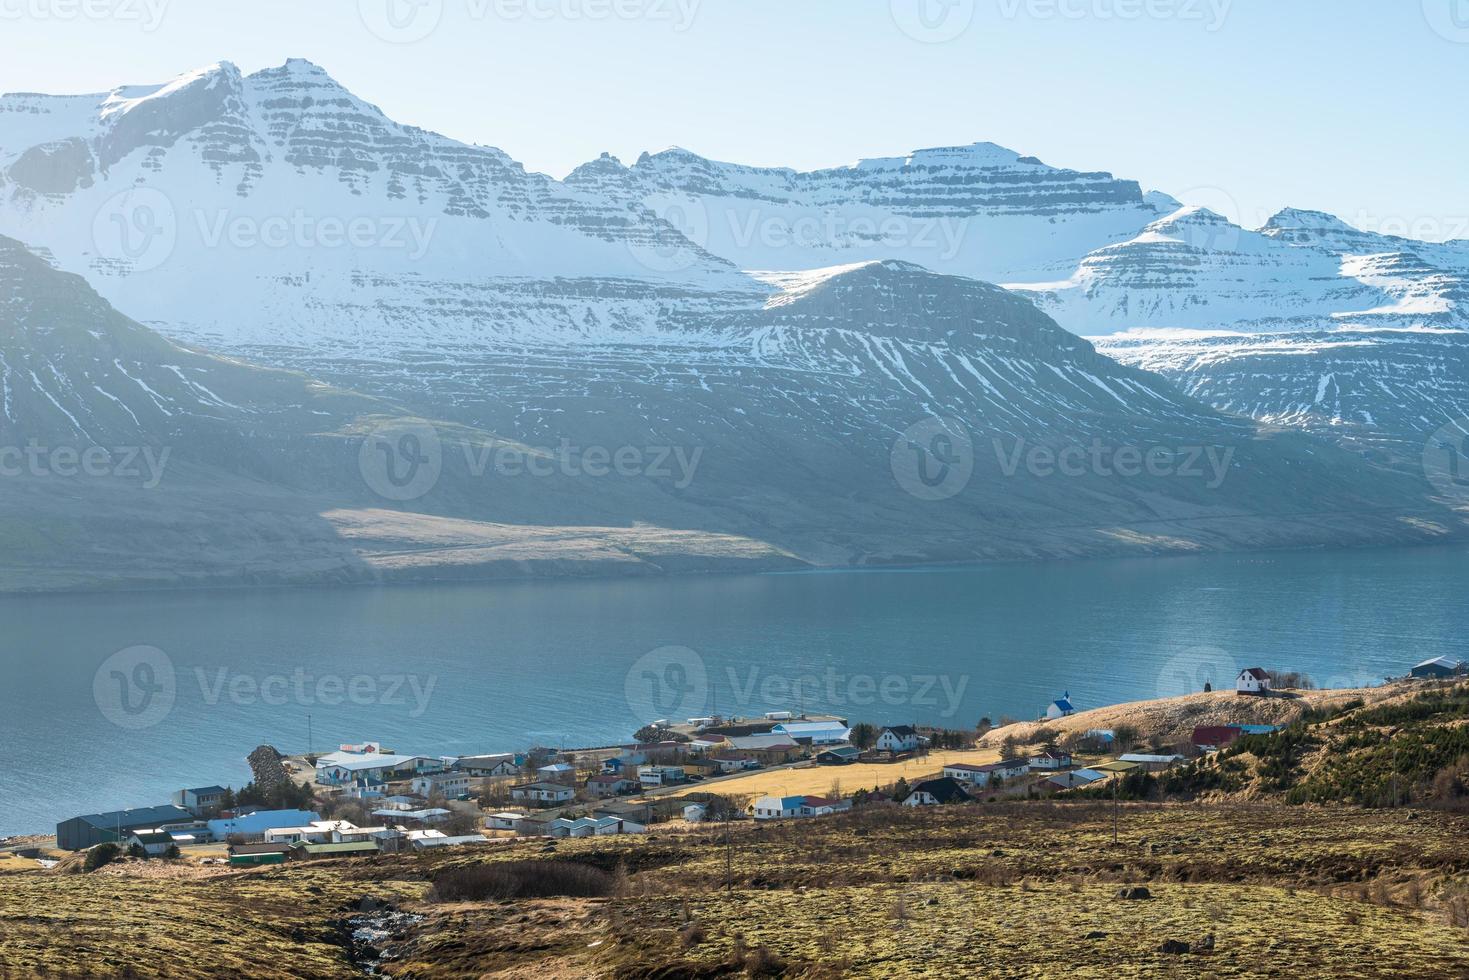 wunderschöne bergkette in stoovarfjorour, dem fischerdorf im ostfjord von ostisland. foto